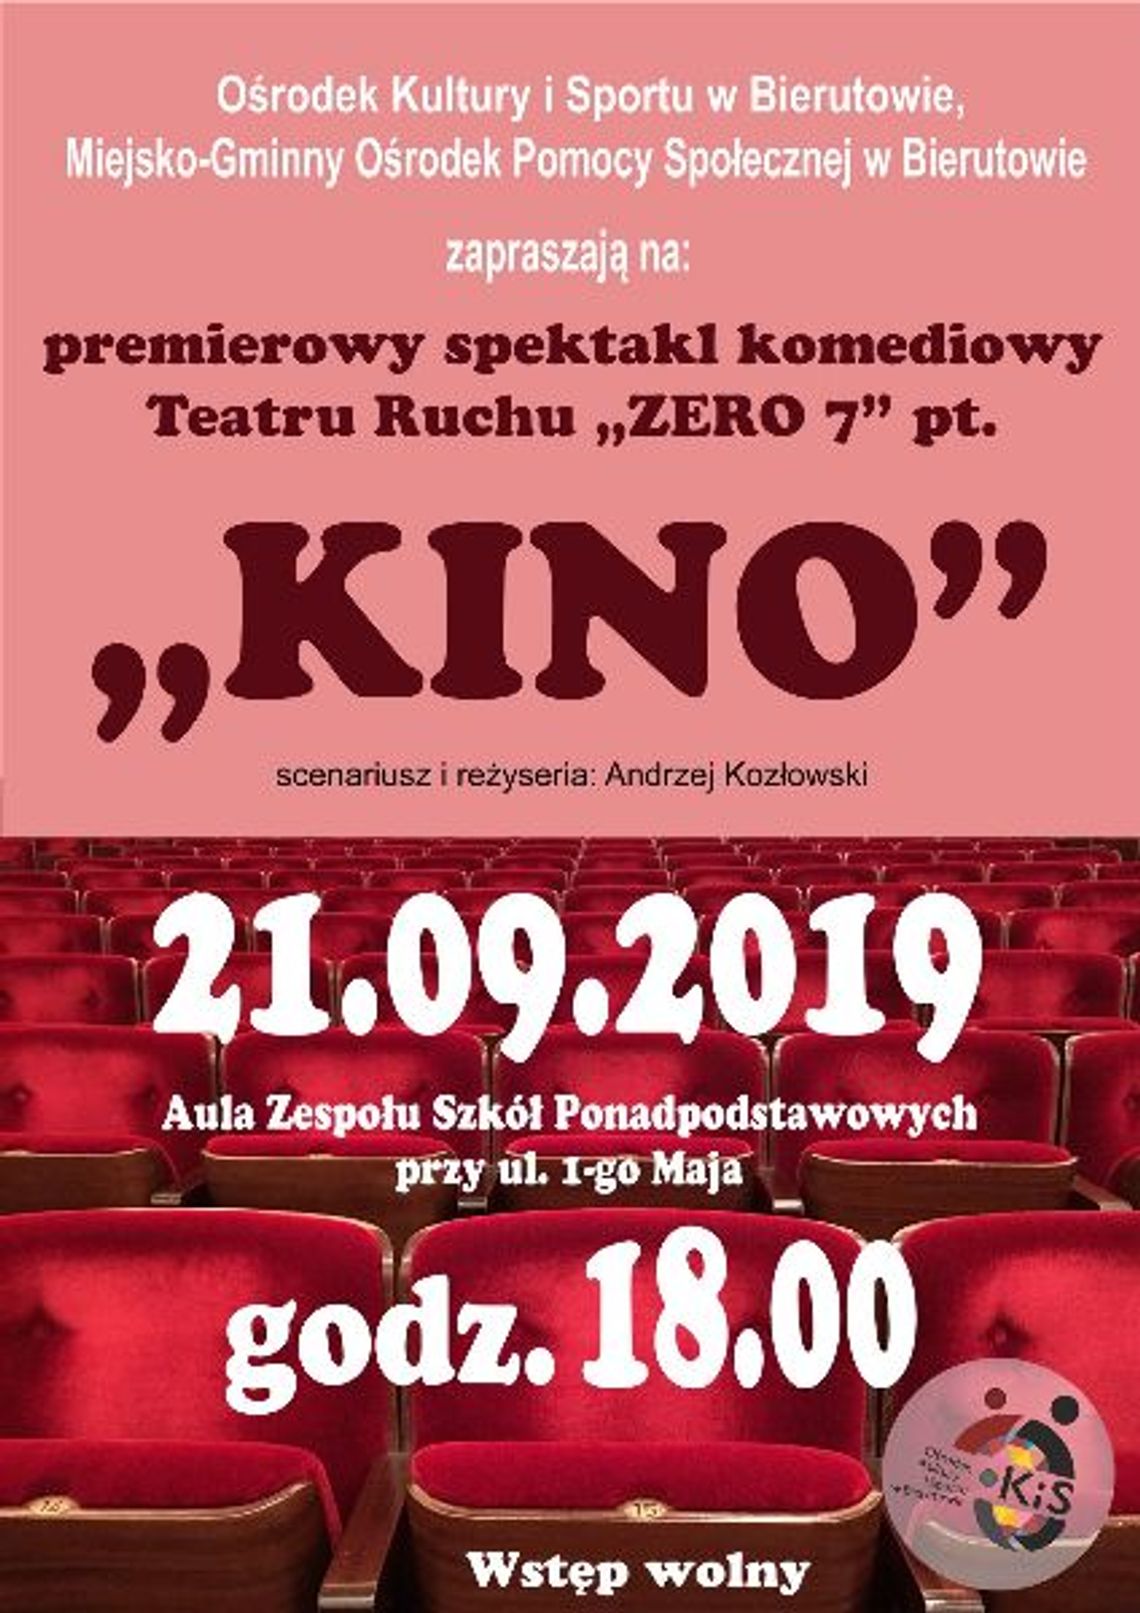 Premierowy spektakl komediowy Teatru Ruchu "ZERO 7" pt. "KINO"